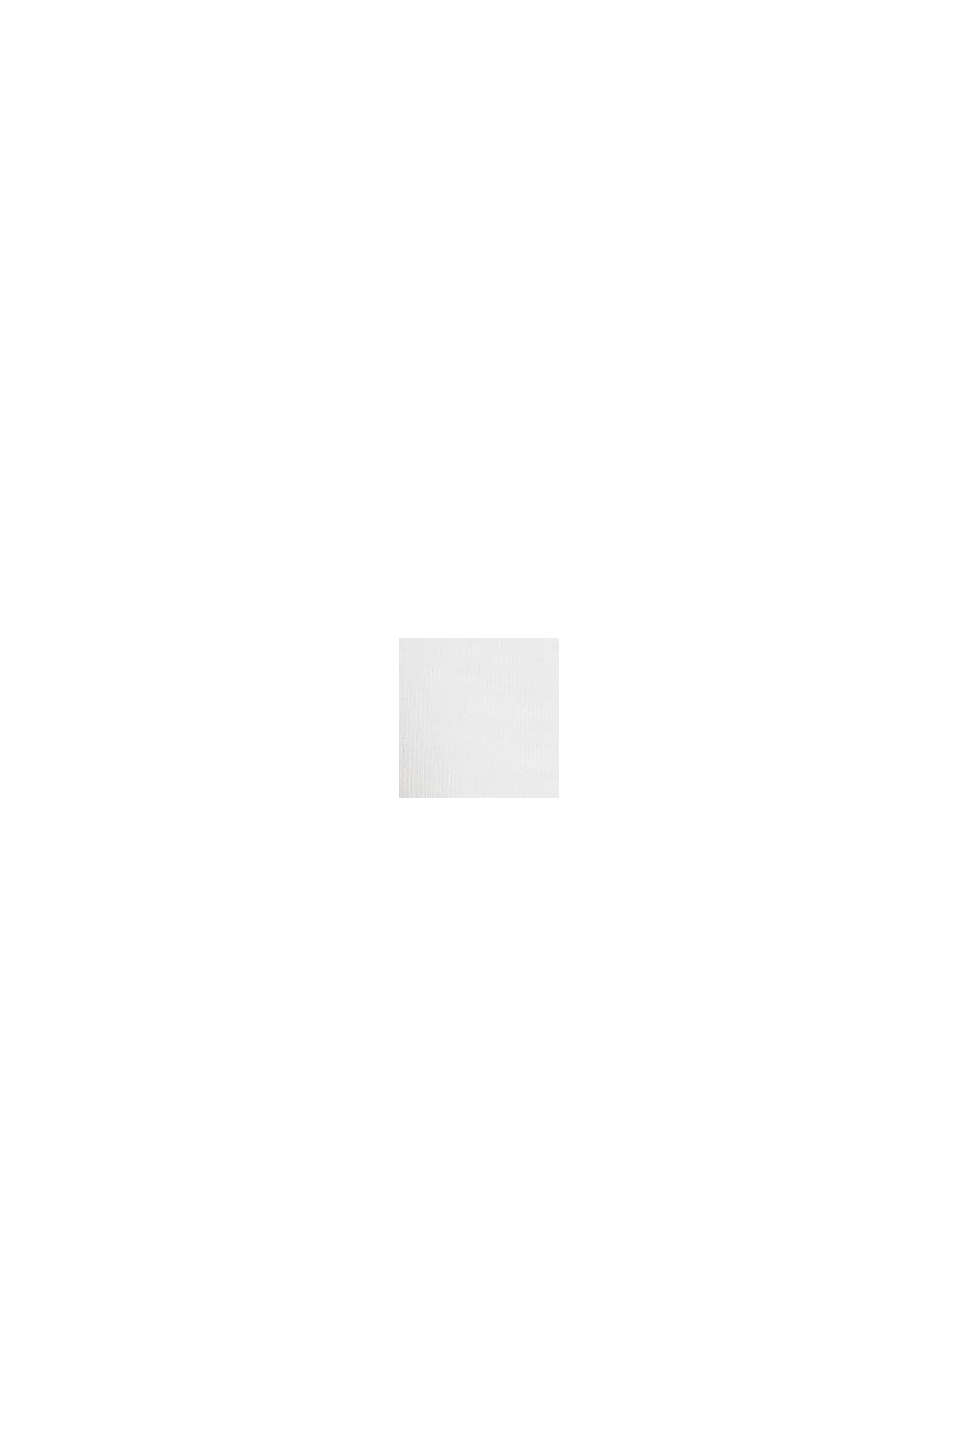 Maglia a manica lunga in  jersey stampata con cotone biologico, OFF WHITE, swatch